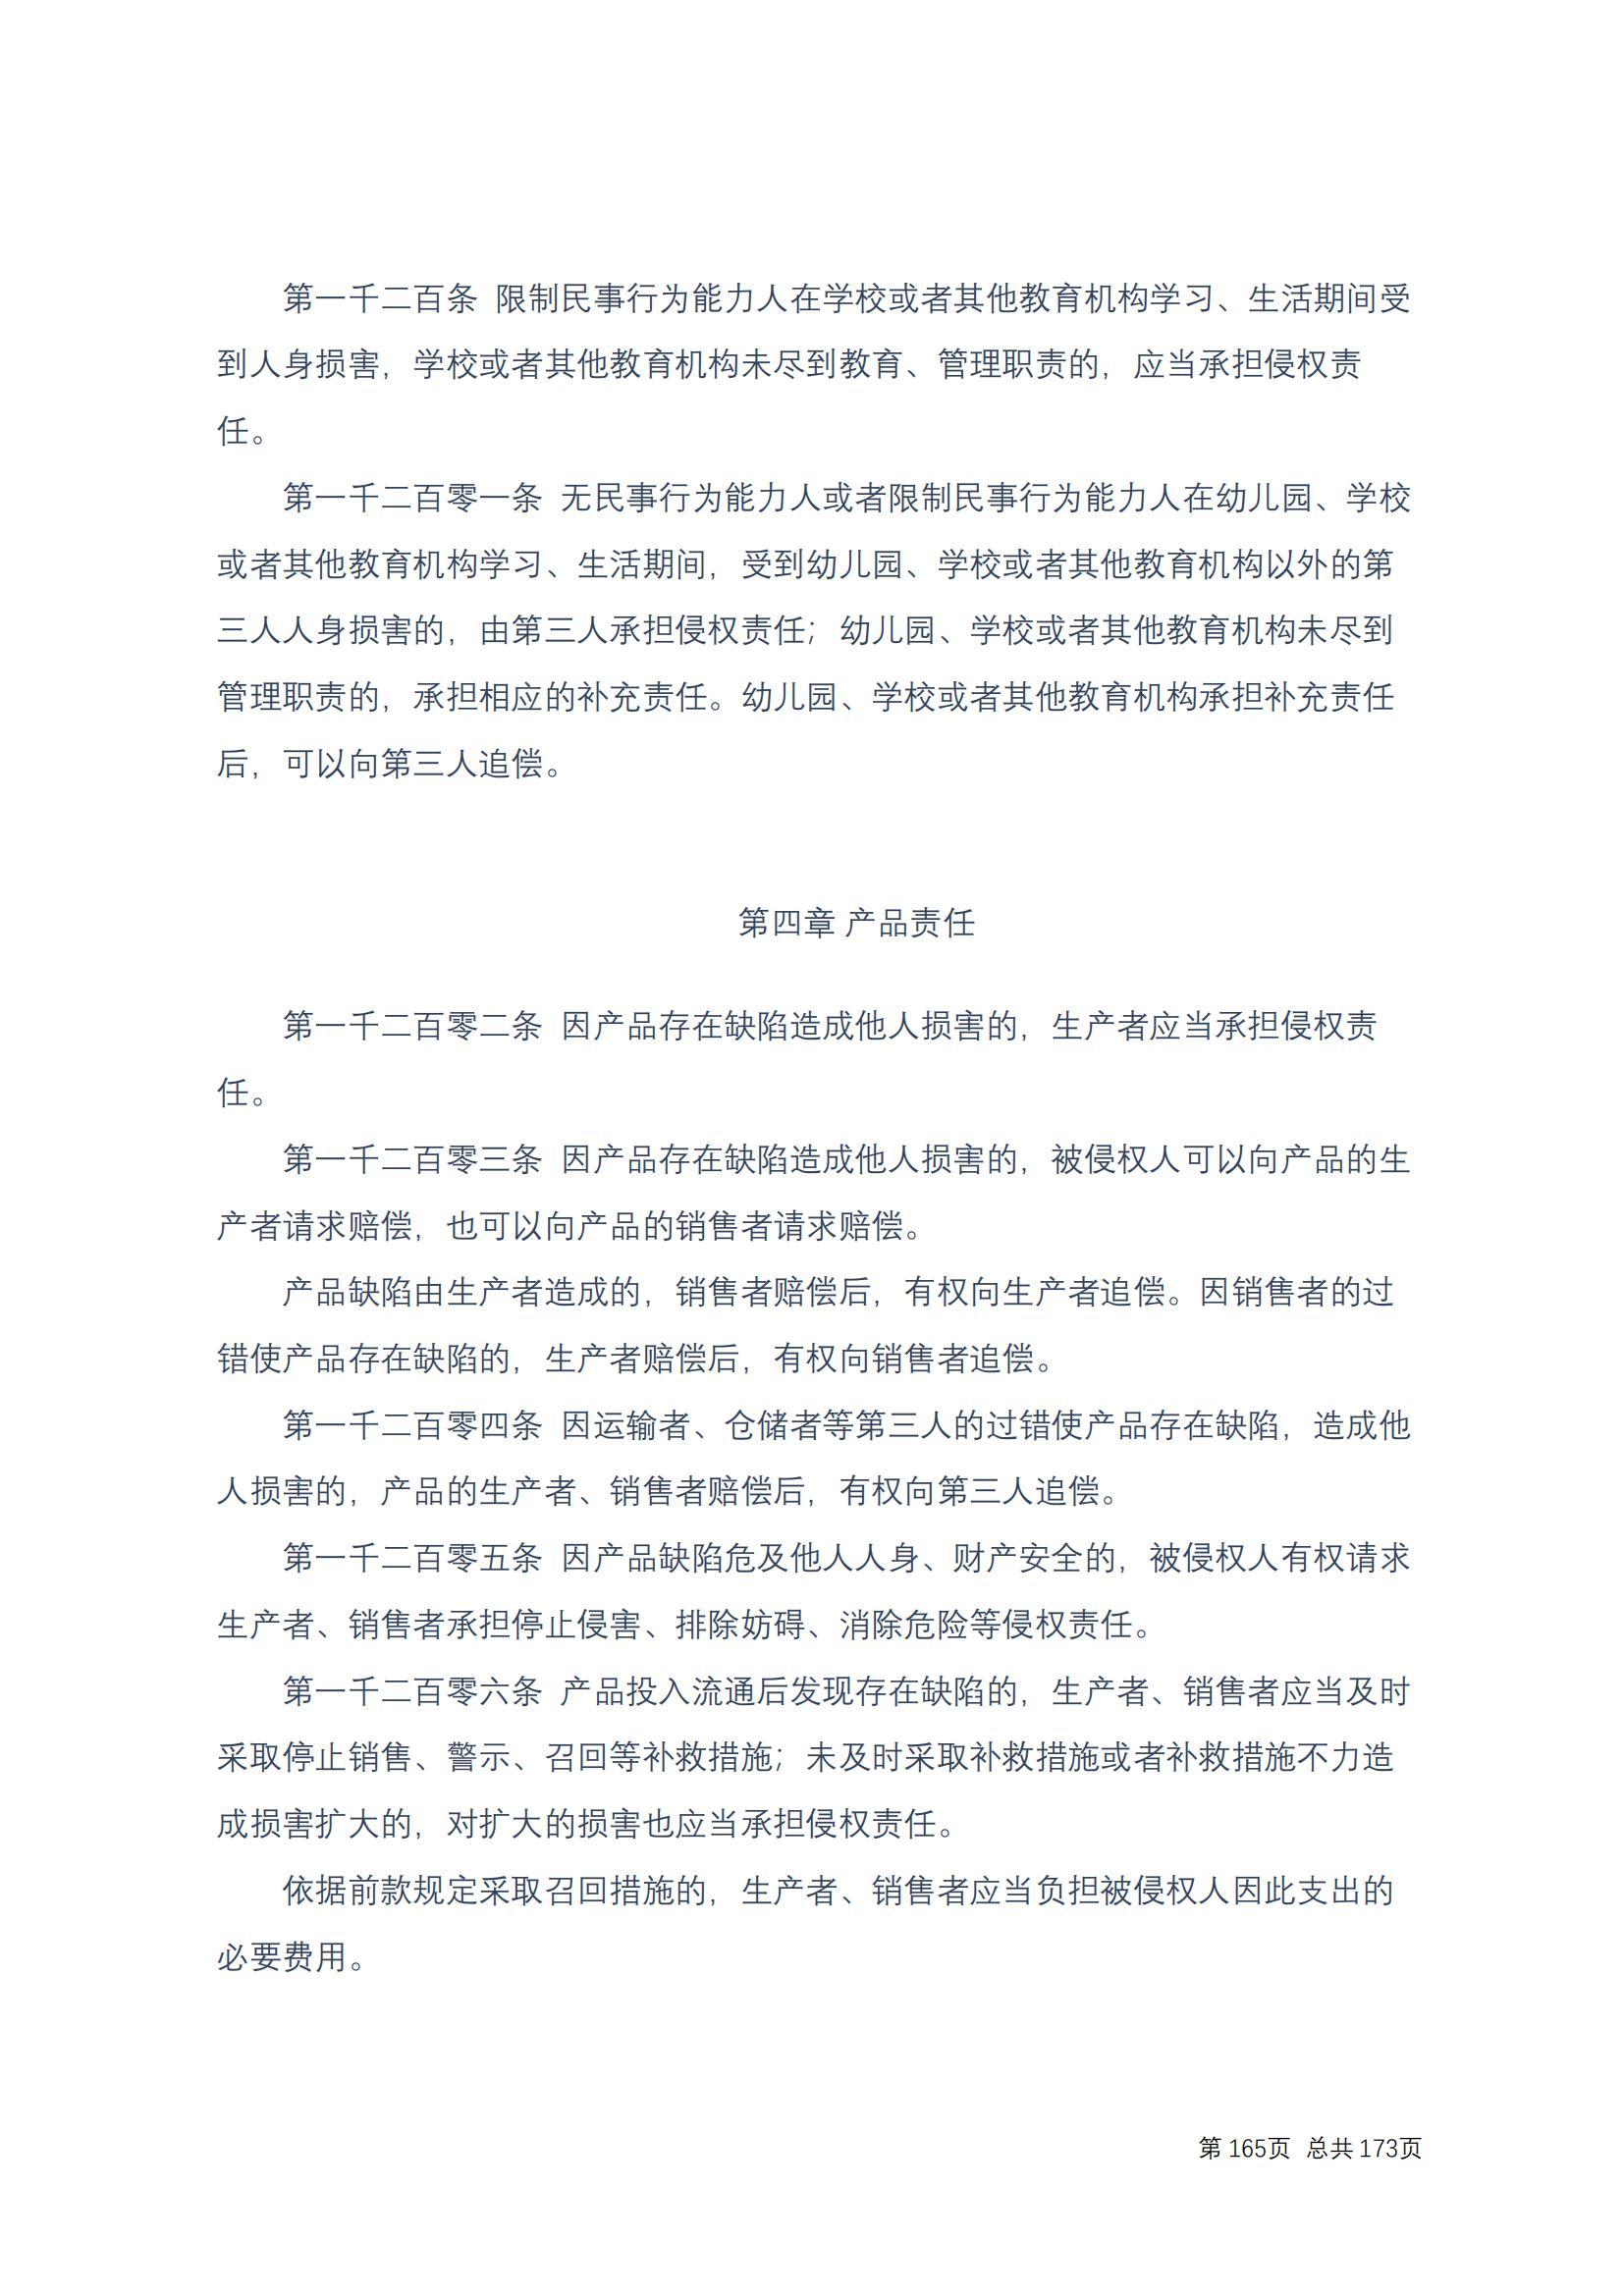 中华人民共和国民法典 修改过_164